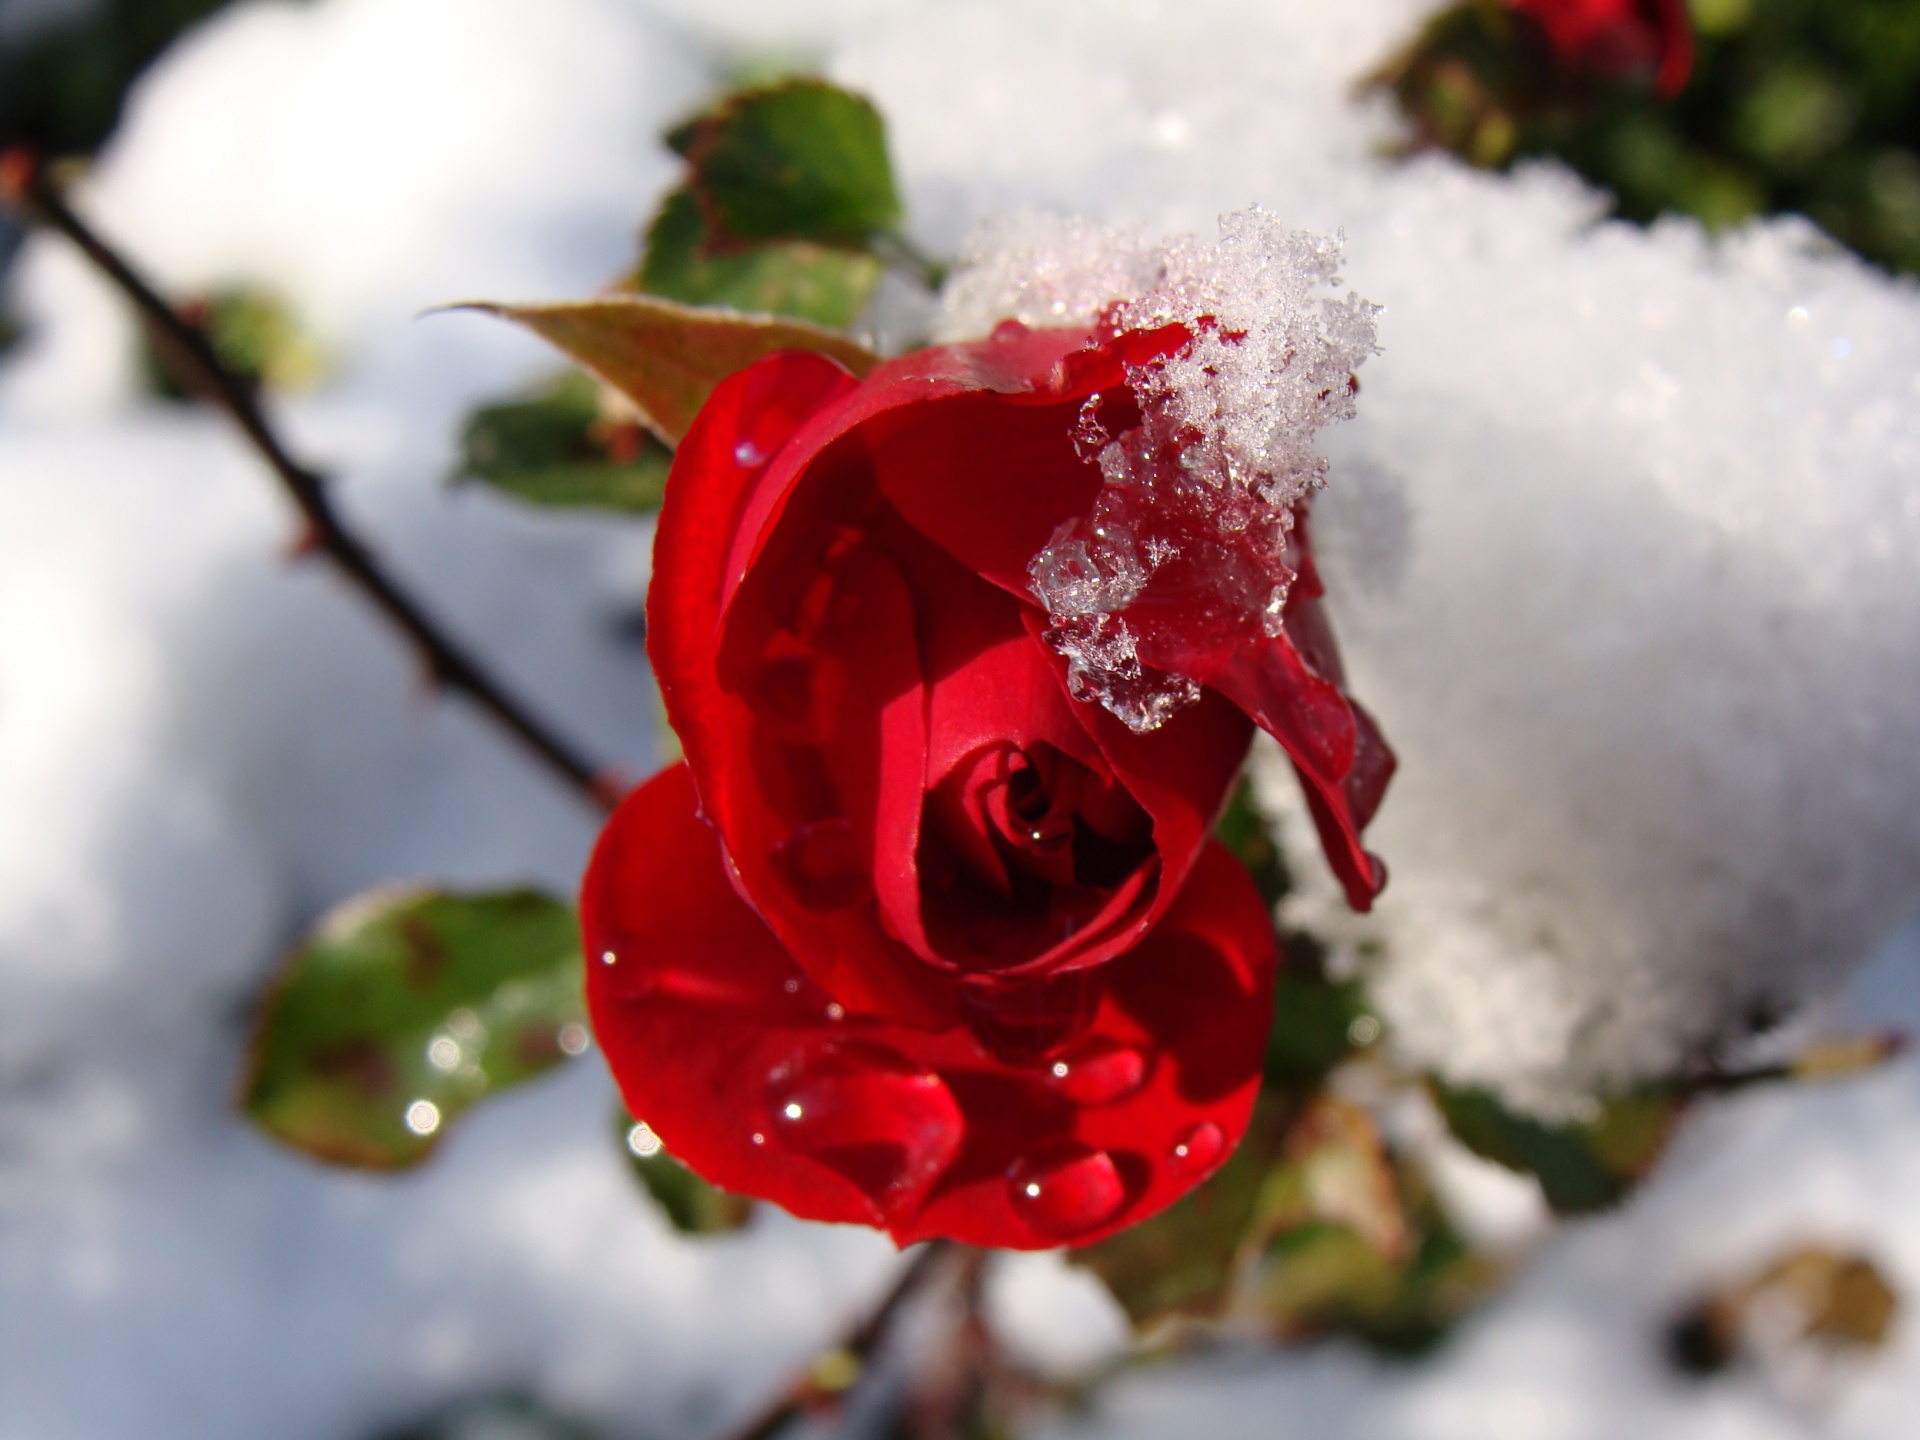 Rose vermelho, neve, gotas da água